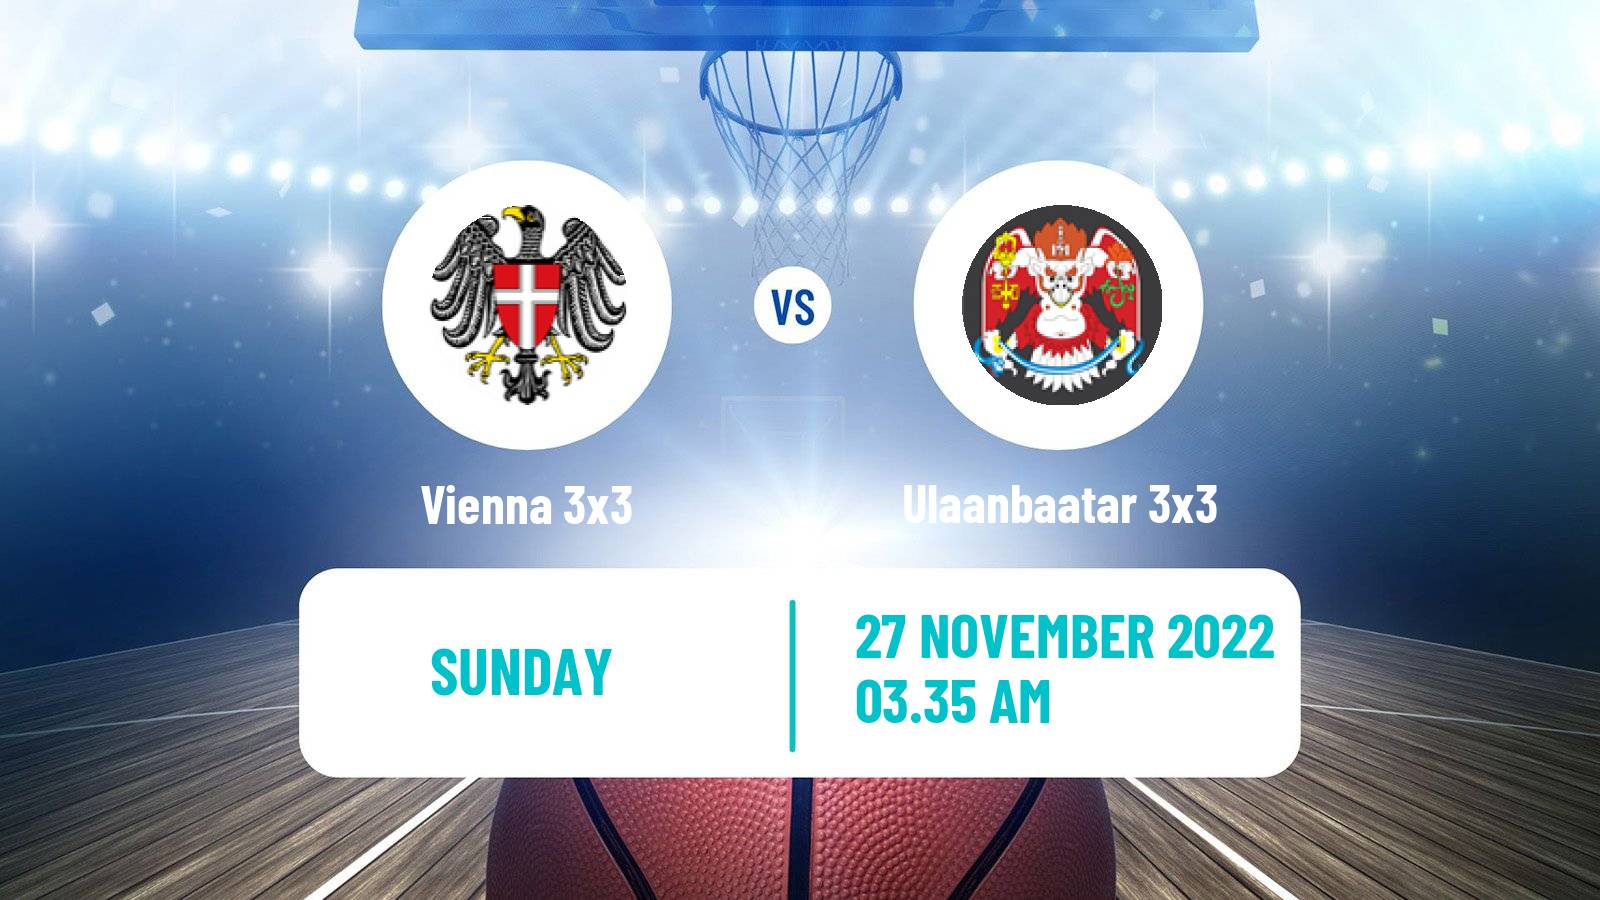 Basketball World Tour Hong Kong 3x3 Vienna 3x3 - Ulaanbaatar 3x3